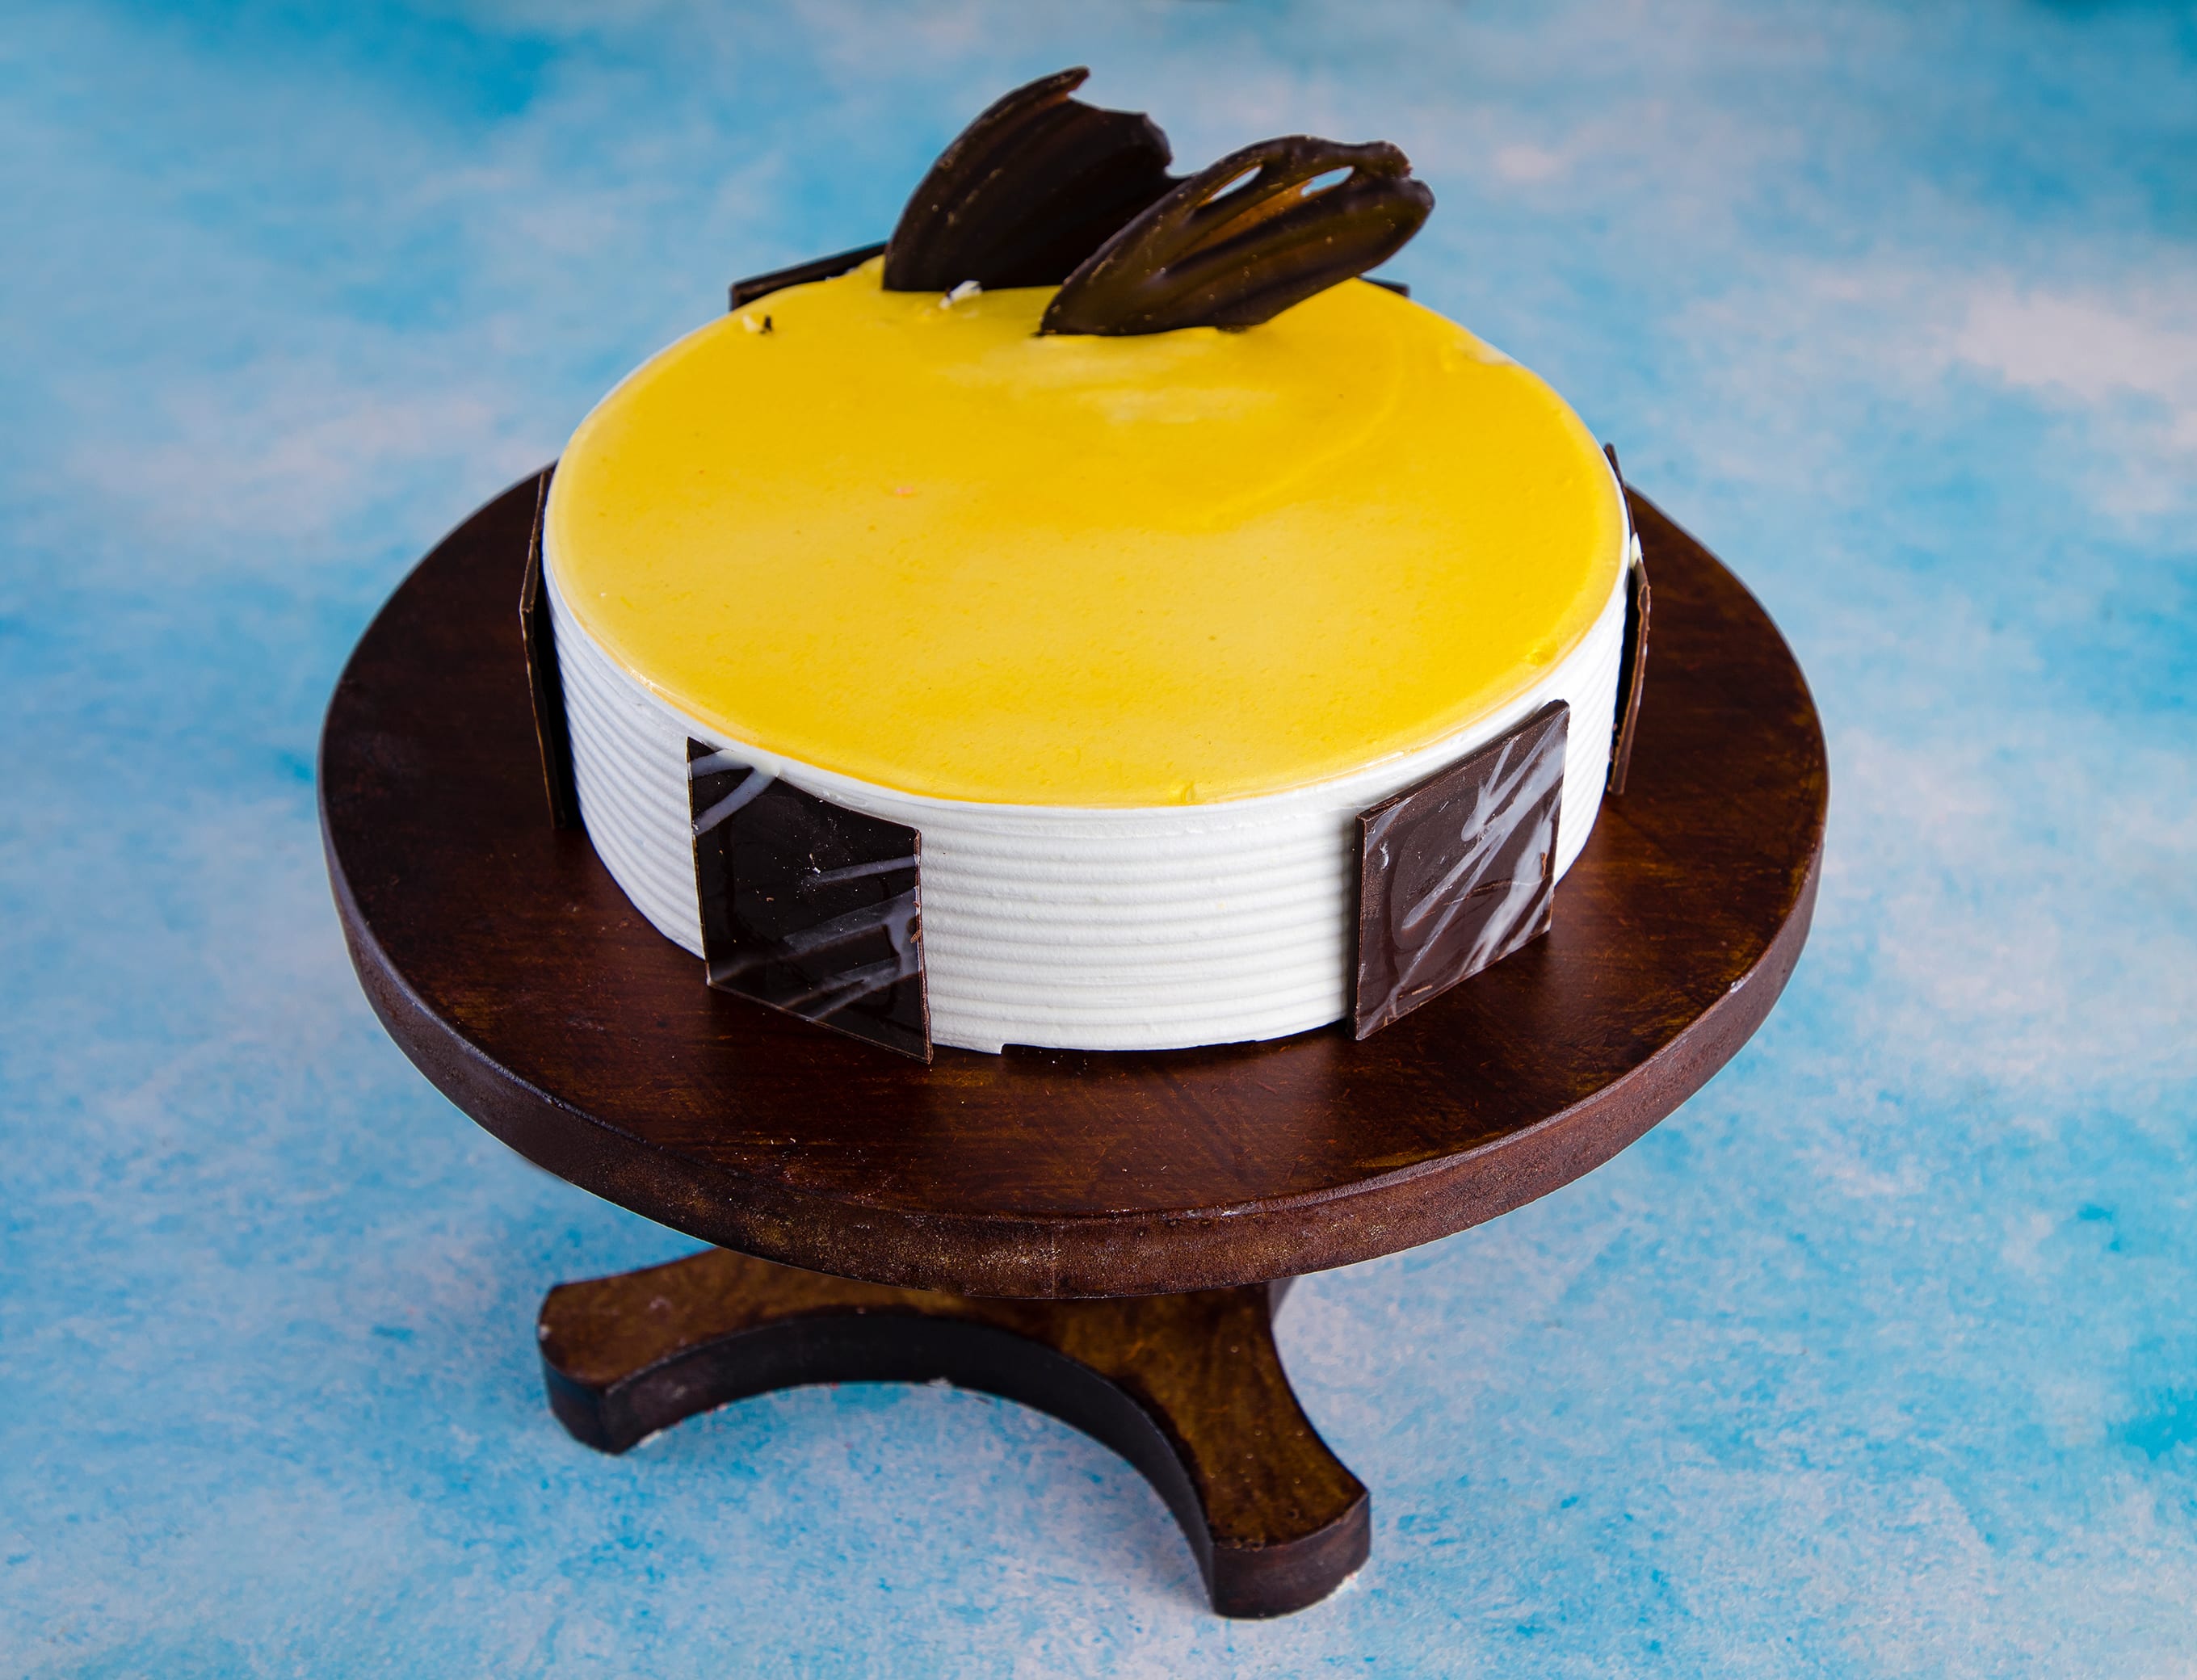 Baby Shark Birthday Theme Cake - Cake Square Chennai | Cake Shop in Chennai